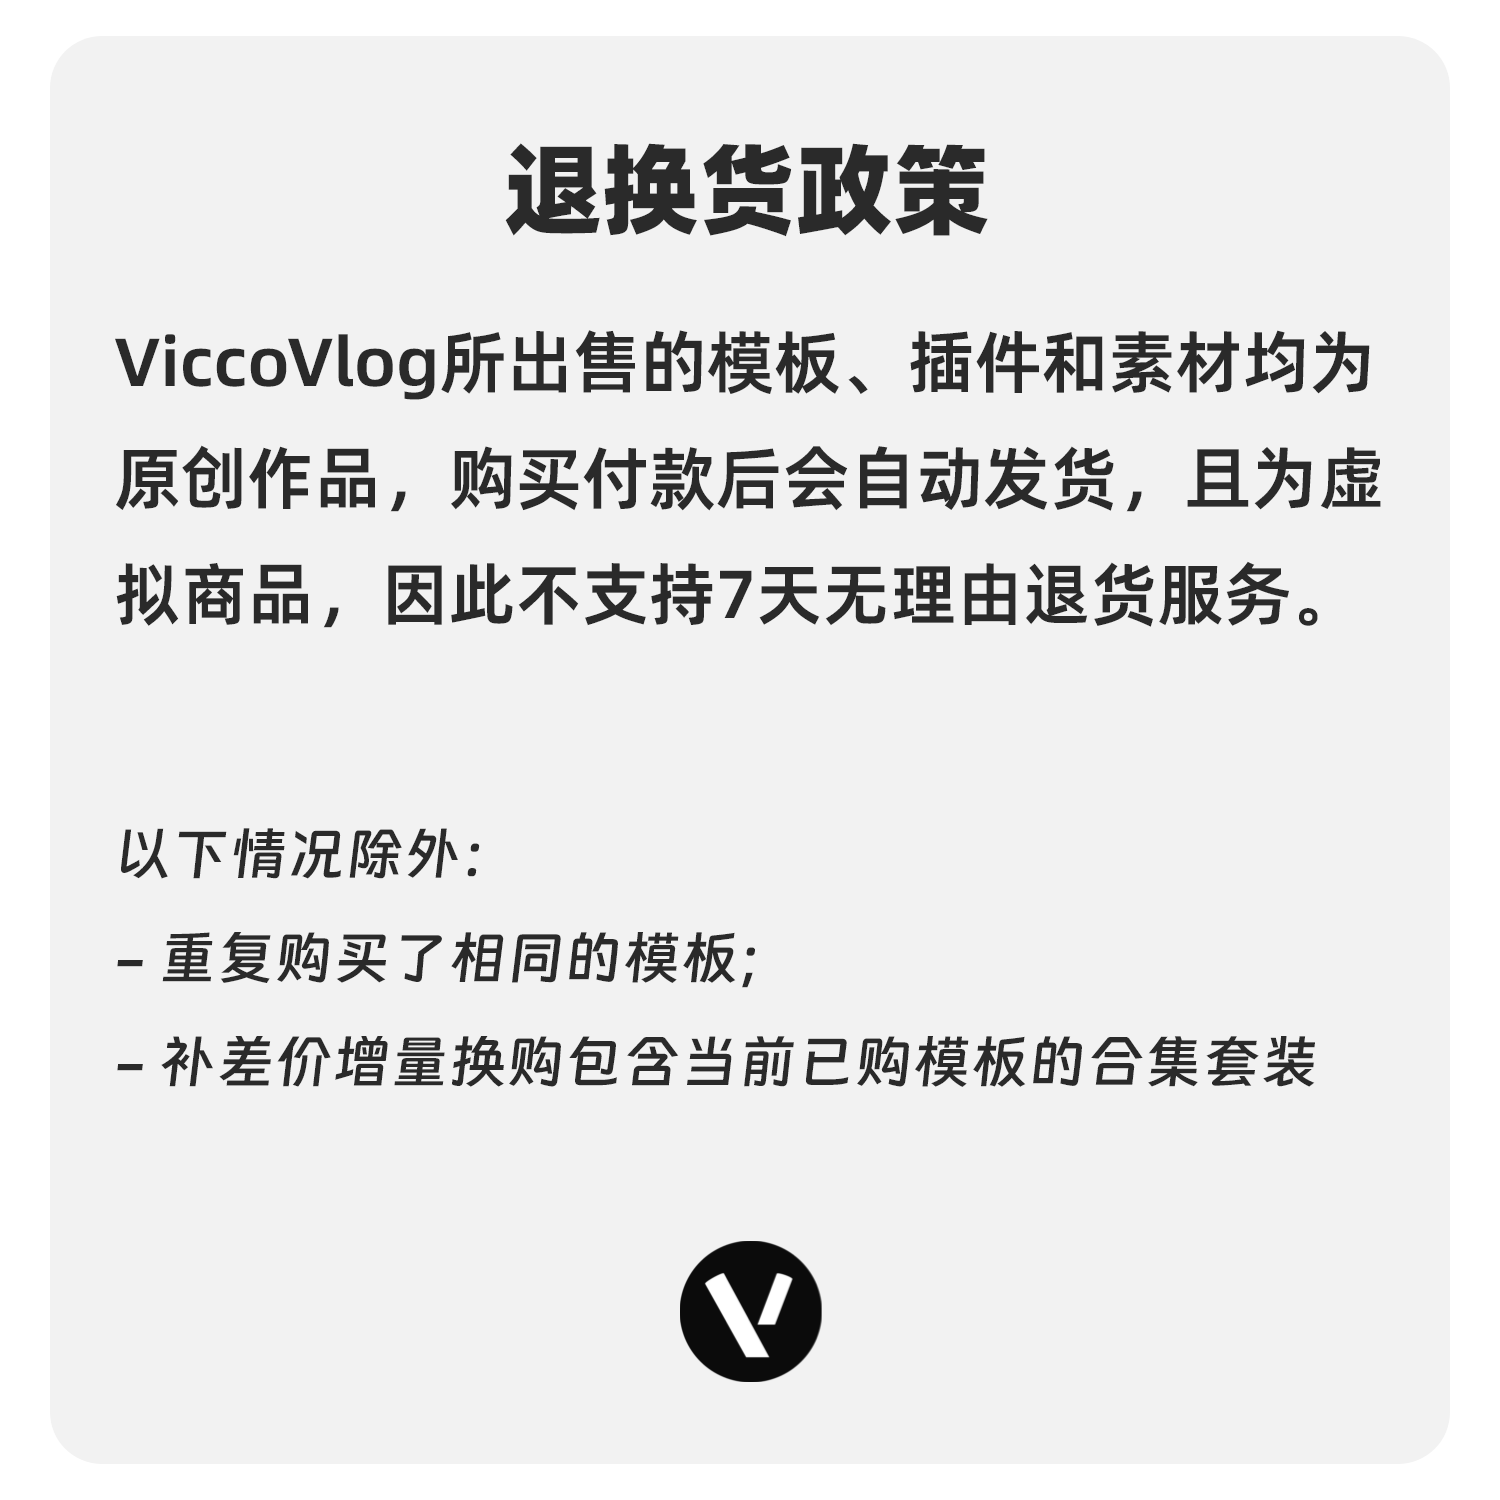 ViccoVlog 达芬奇 创新标题模板 Innovation Titles - 图1